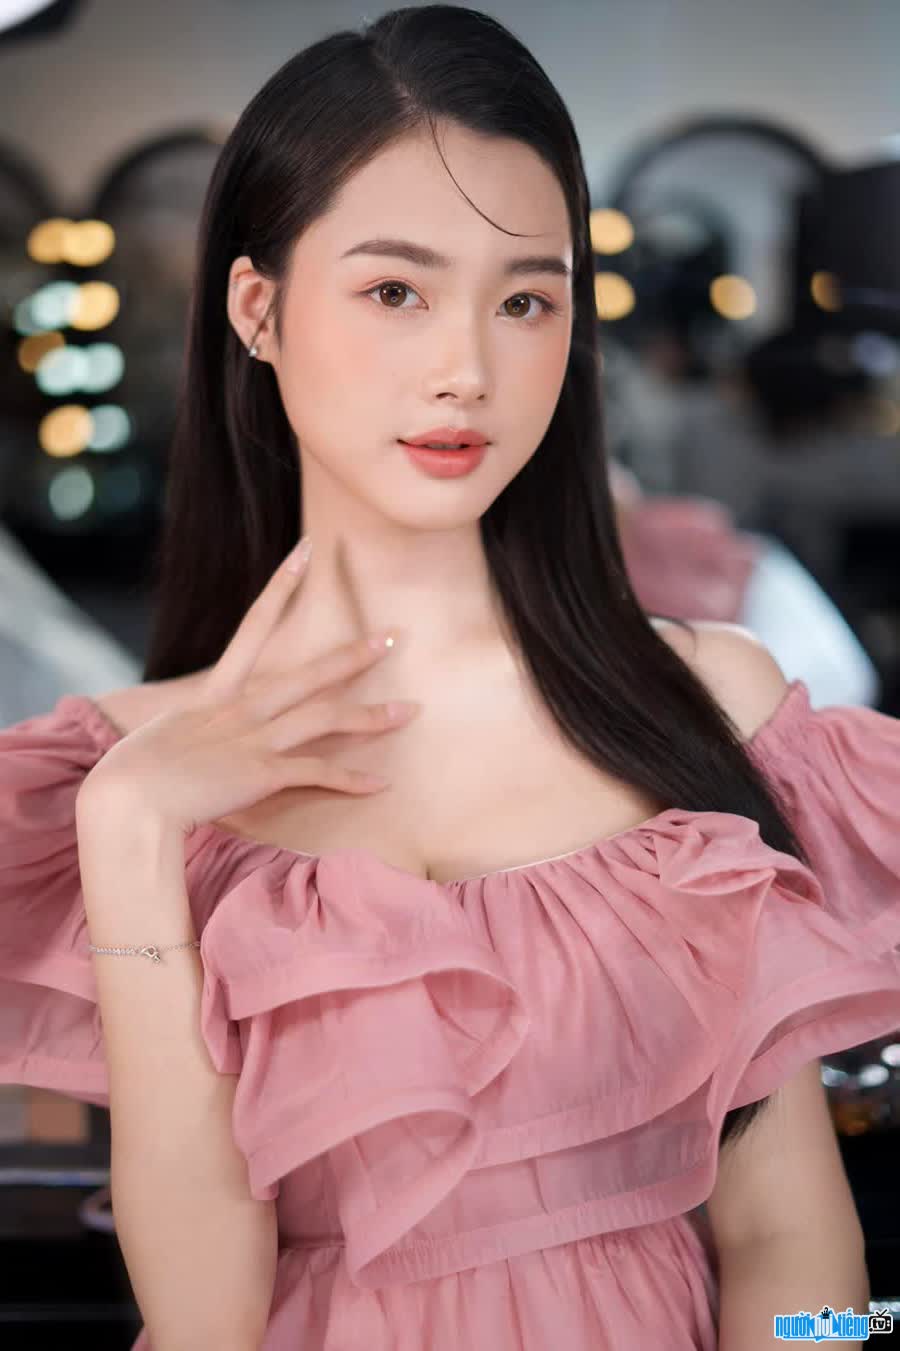 Miss Tran Ha Linh possesses beautiful beauty